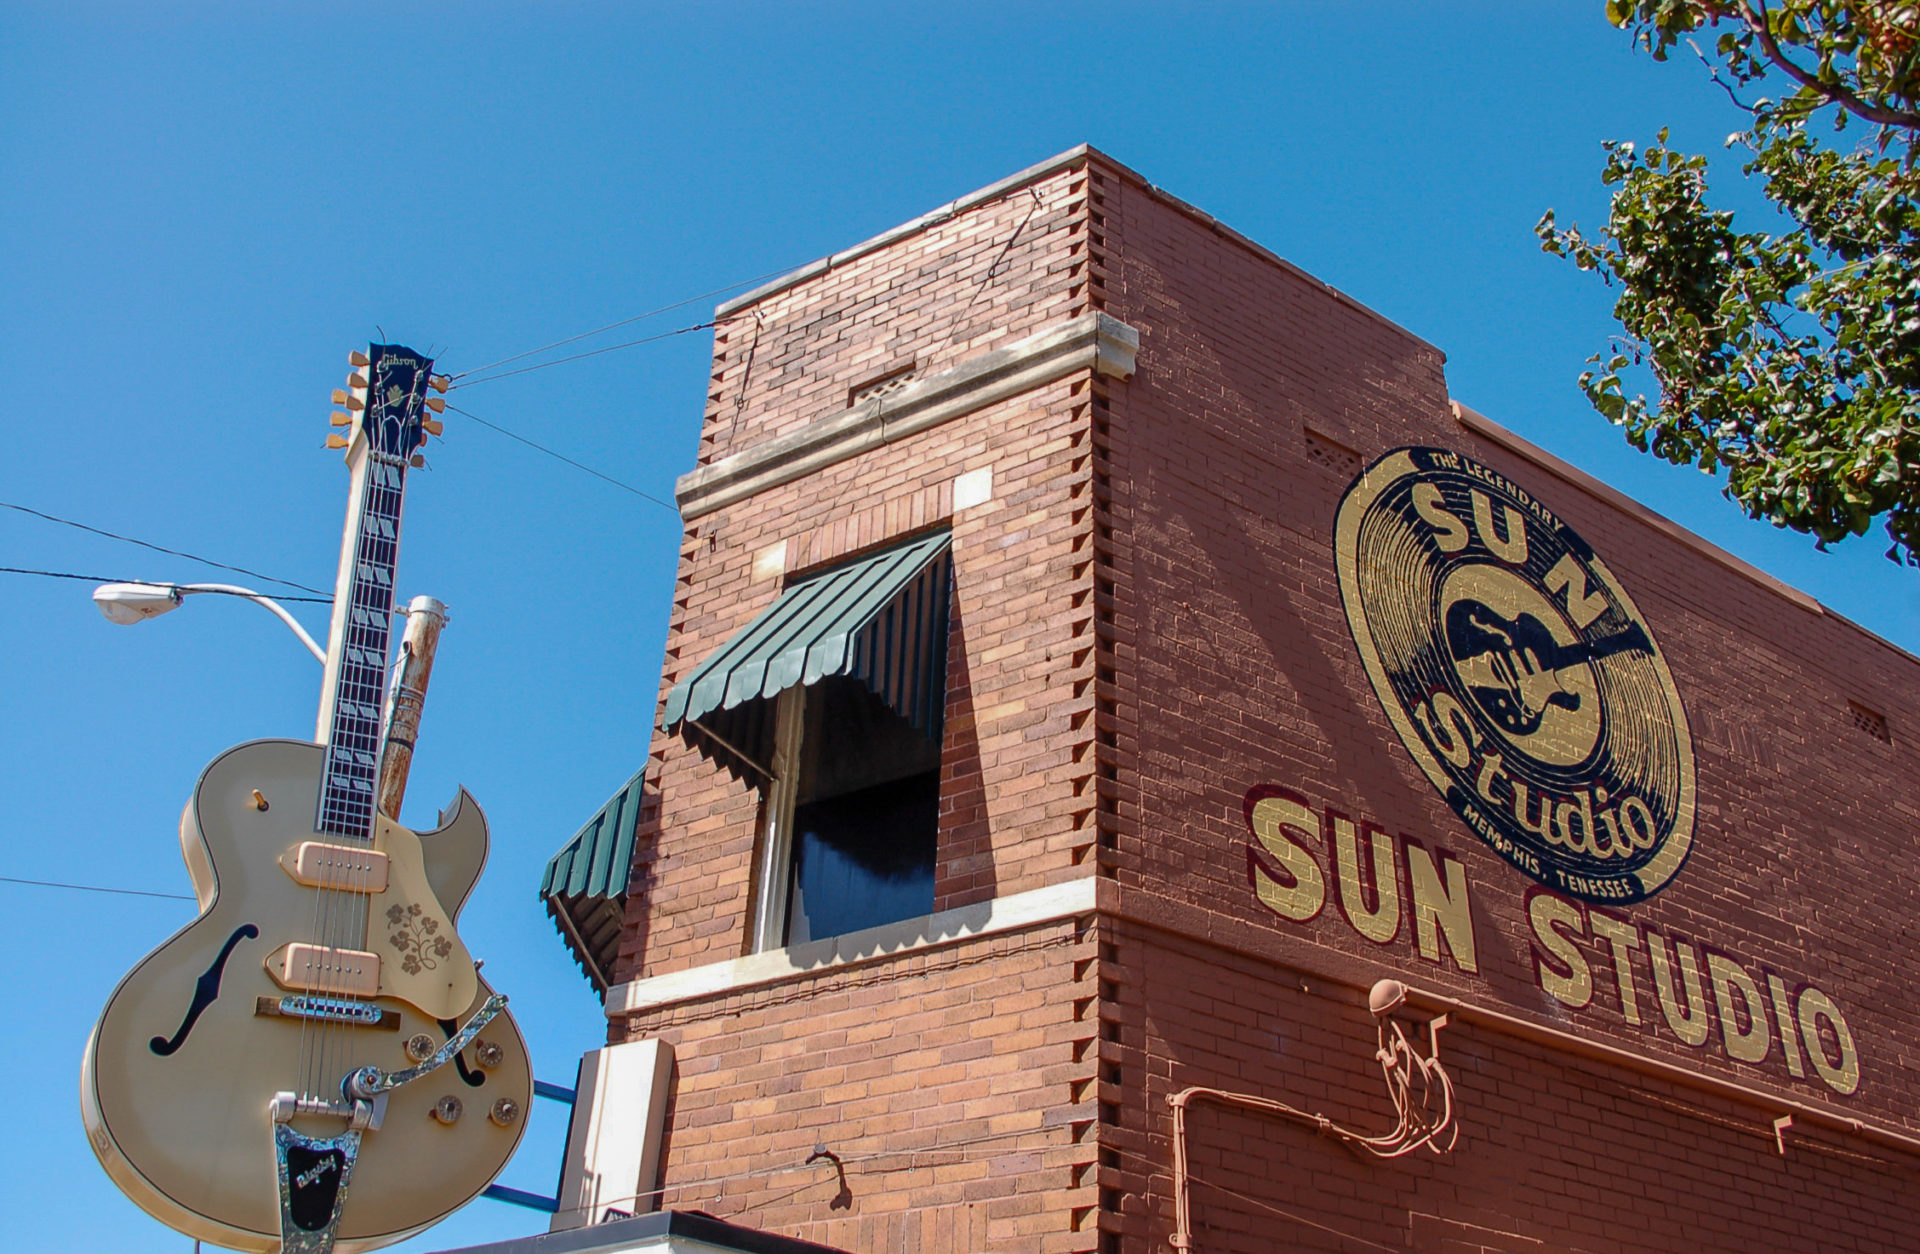 Außenaufnahme des Sun Studio in Memphis mit Gitarre und Schriftzug